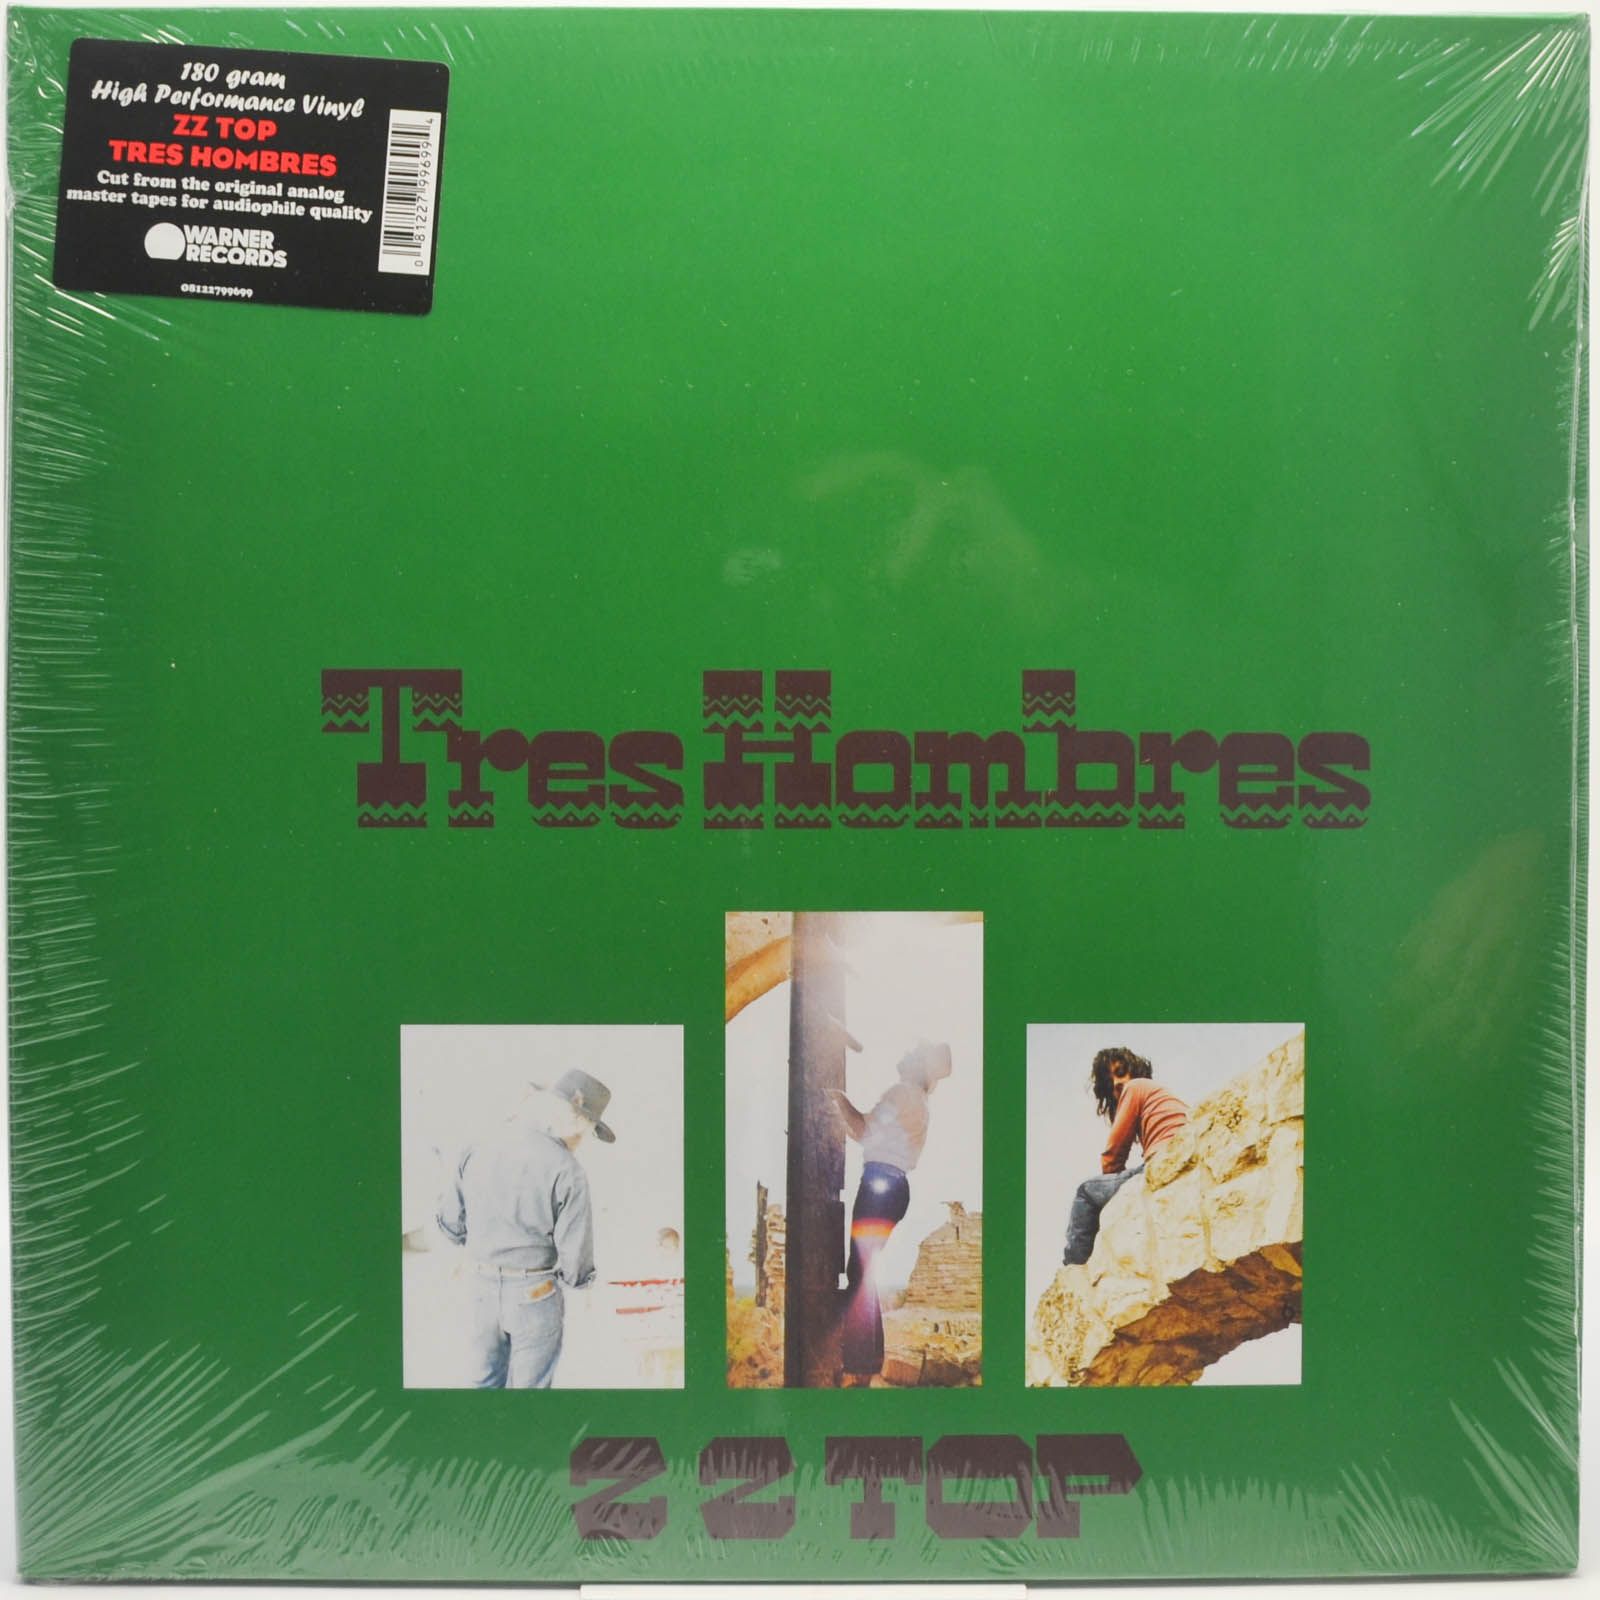 ZZ Top — Tres Hombres, 1973